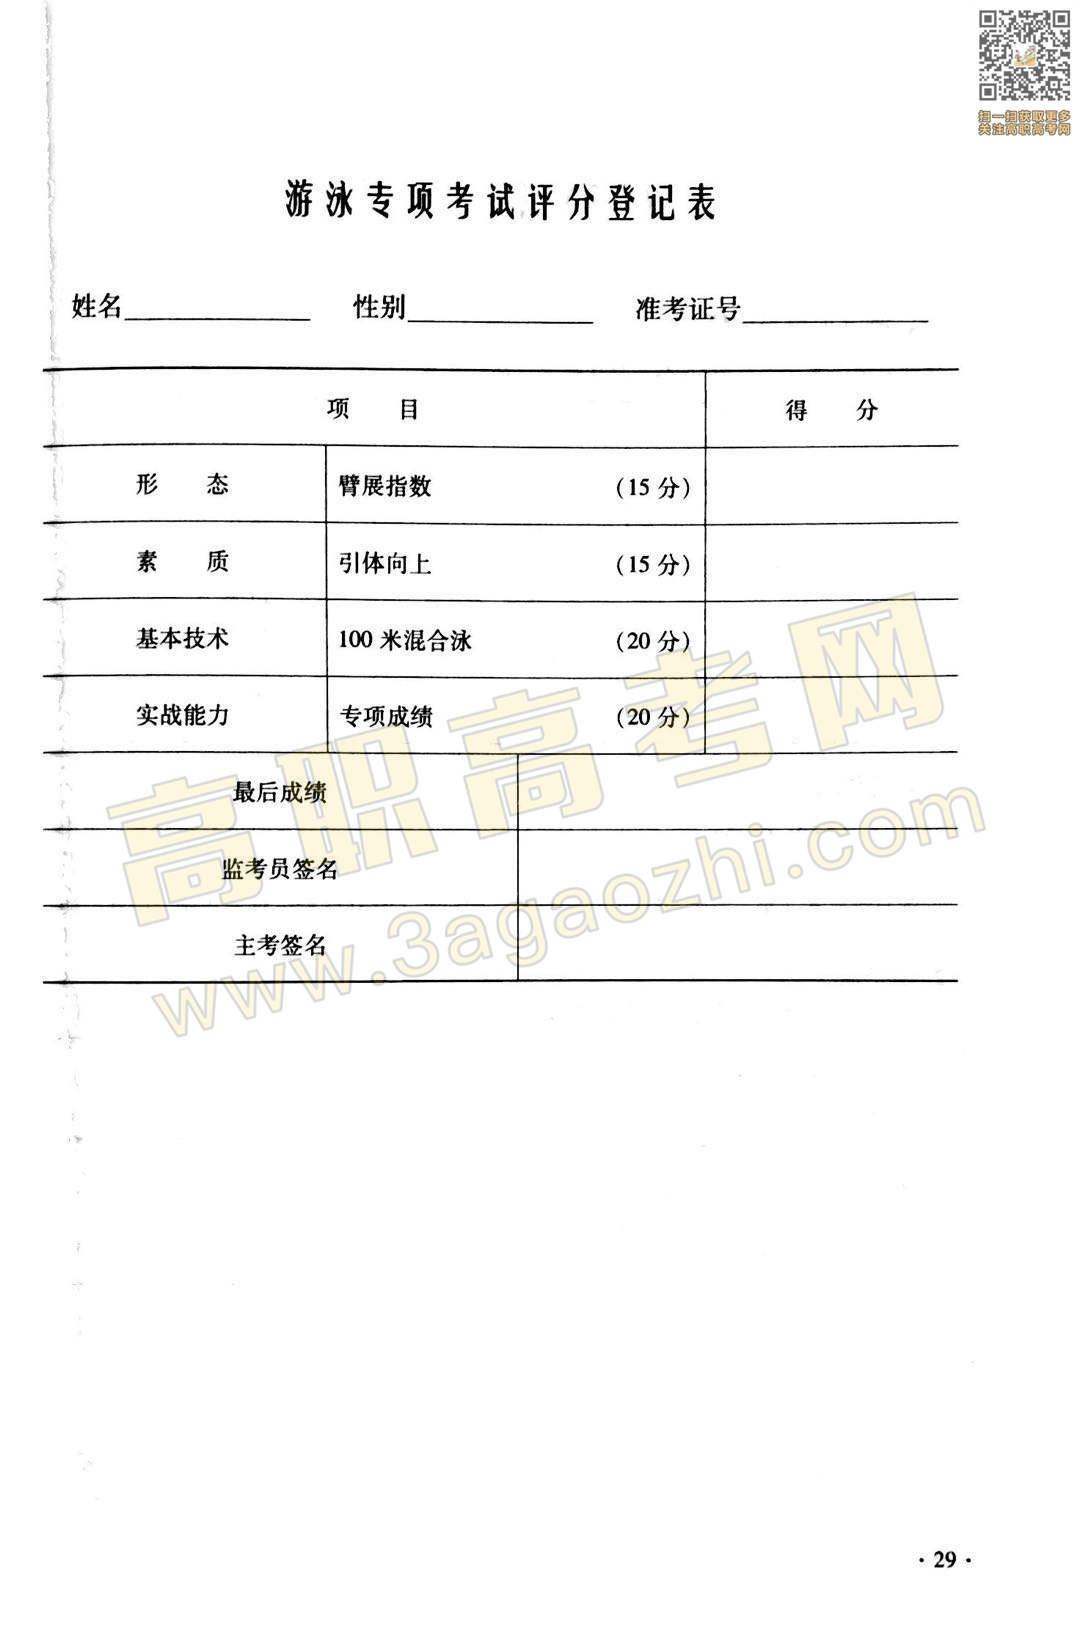 体育证书,2020年广东中职技能课程考试大纲及样题